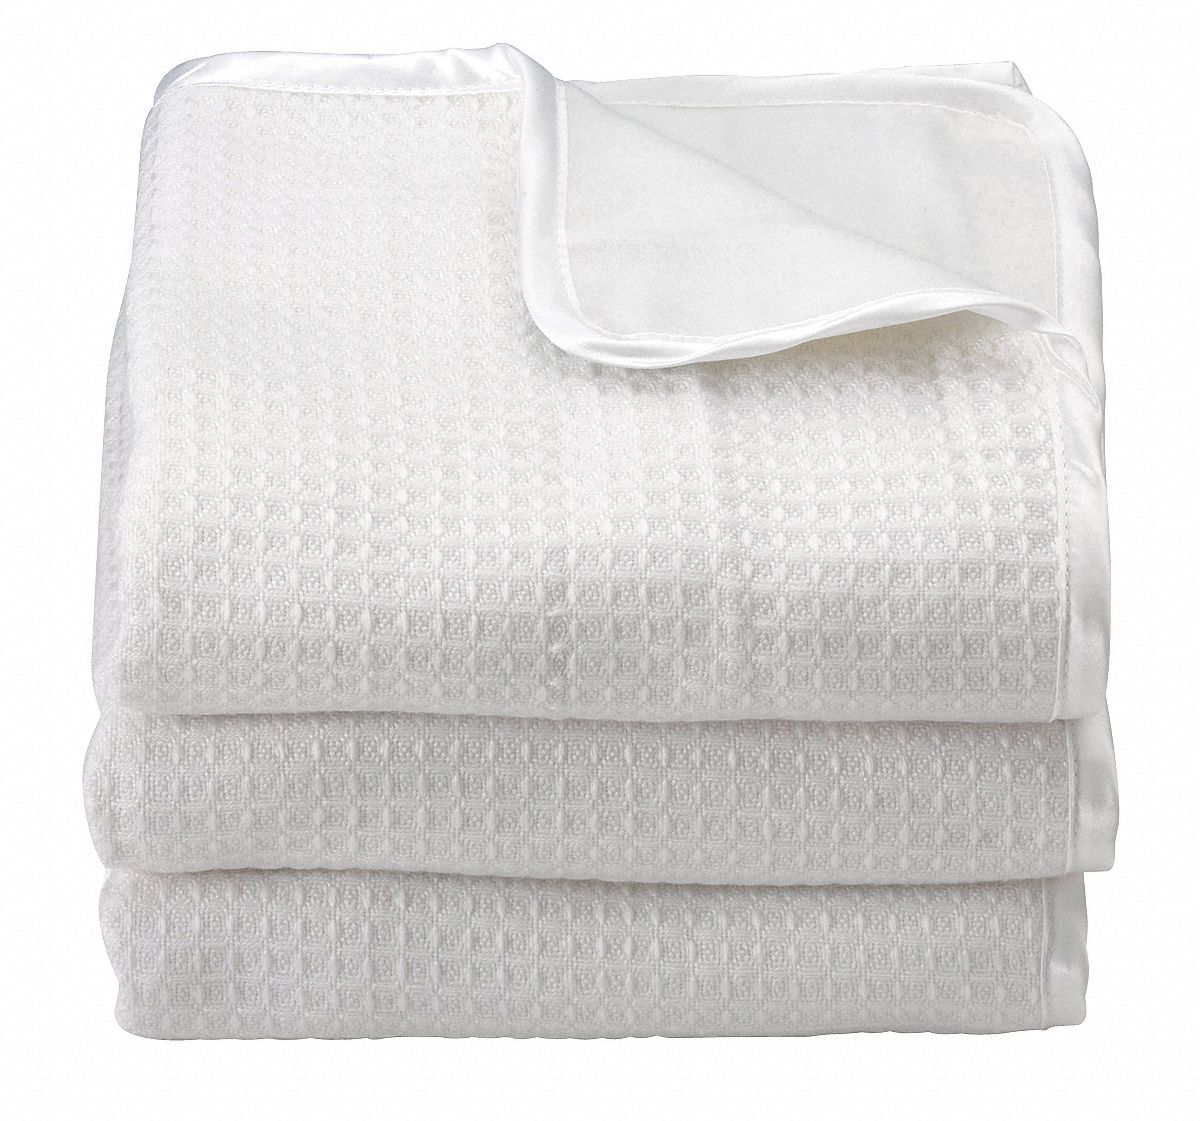 5NXN0 - Baby Blanket 32x40 In. White PK6